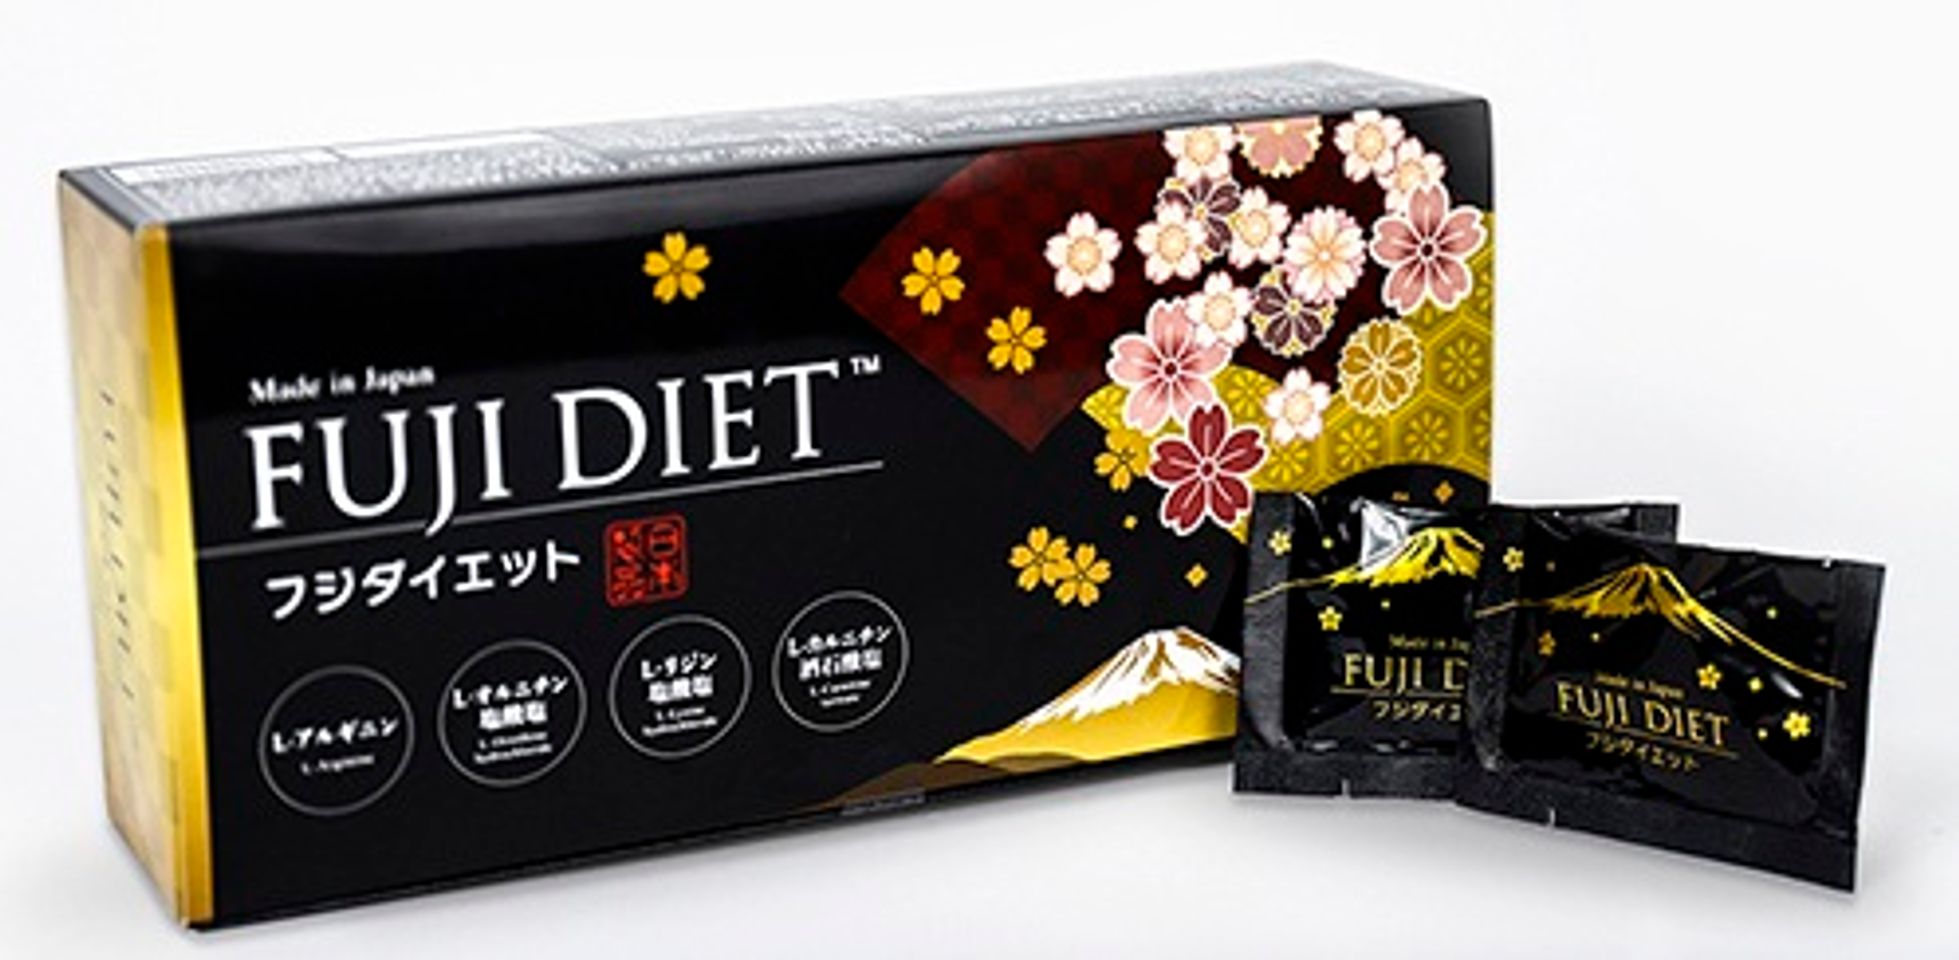 Fuji Diet là sản phẩm hỗ trợ giảm cân nhanh chóng an toàn hiệu quả